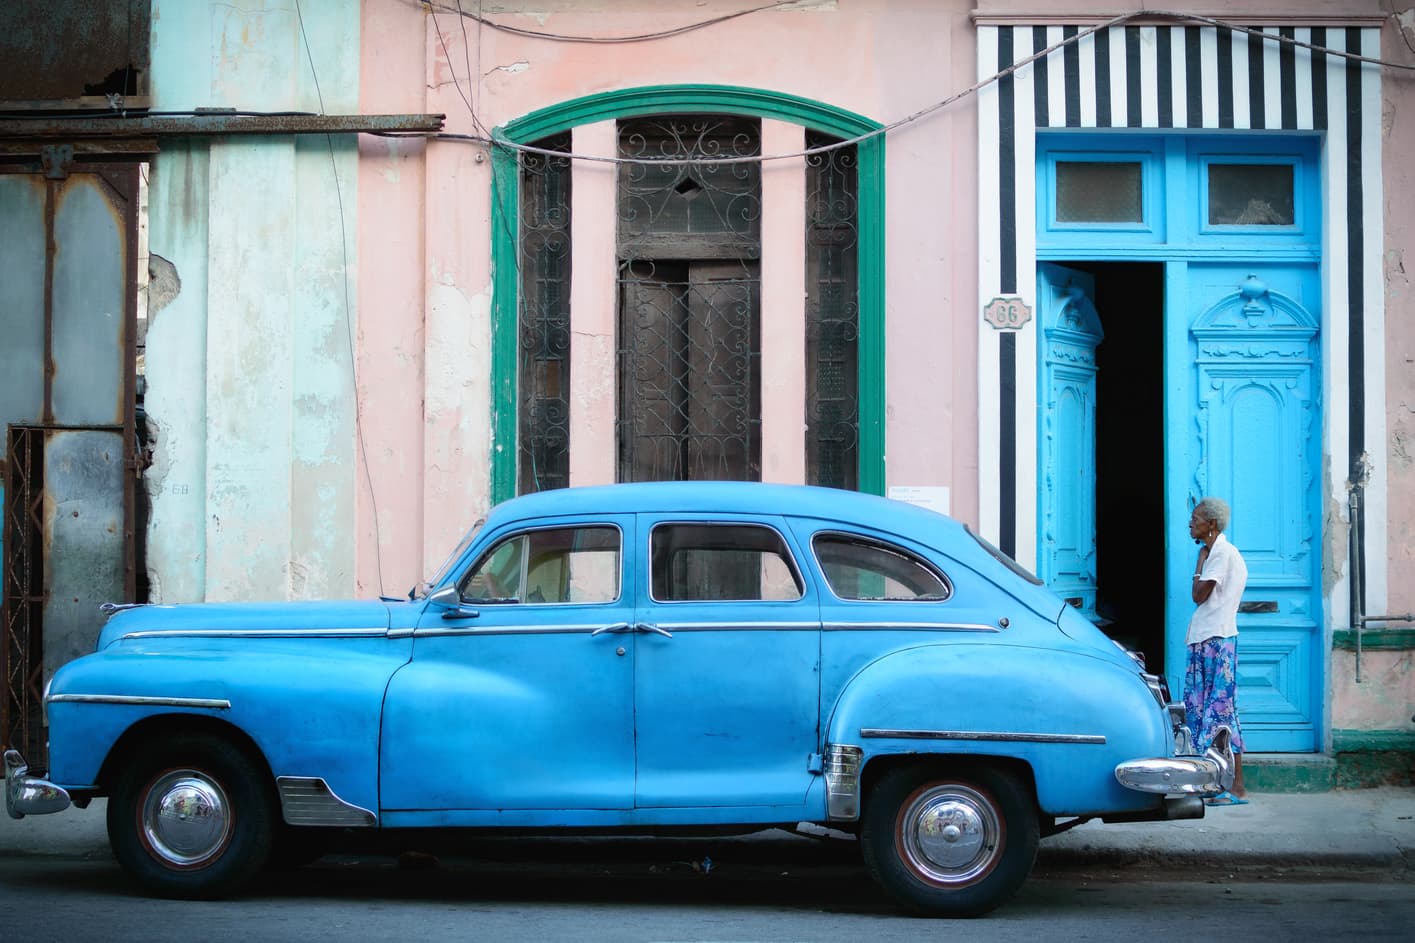 La Habana coche azul señora puerta azul. Que hacer en la habana